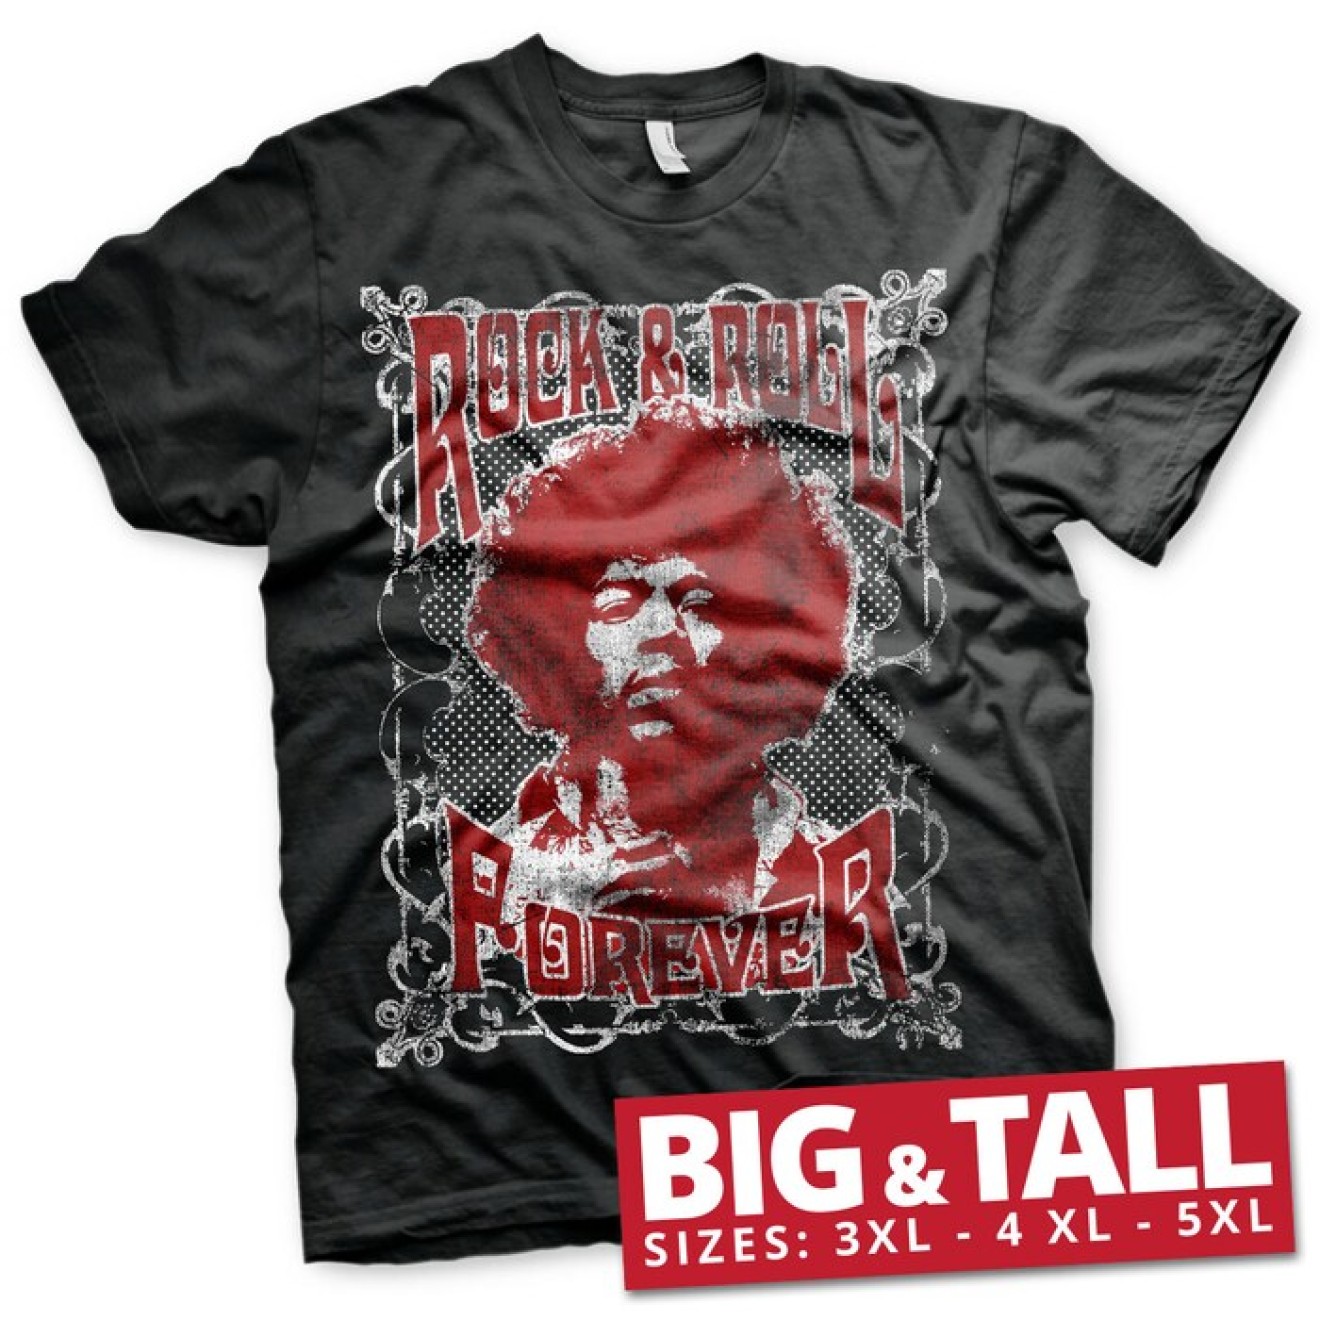 Jimi Hendrix - Rock 'n Roll Forever Big & Tall T-Shirt